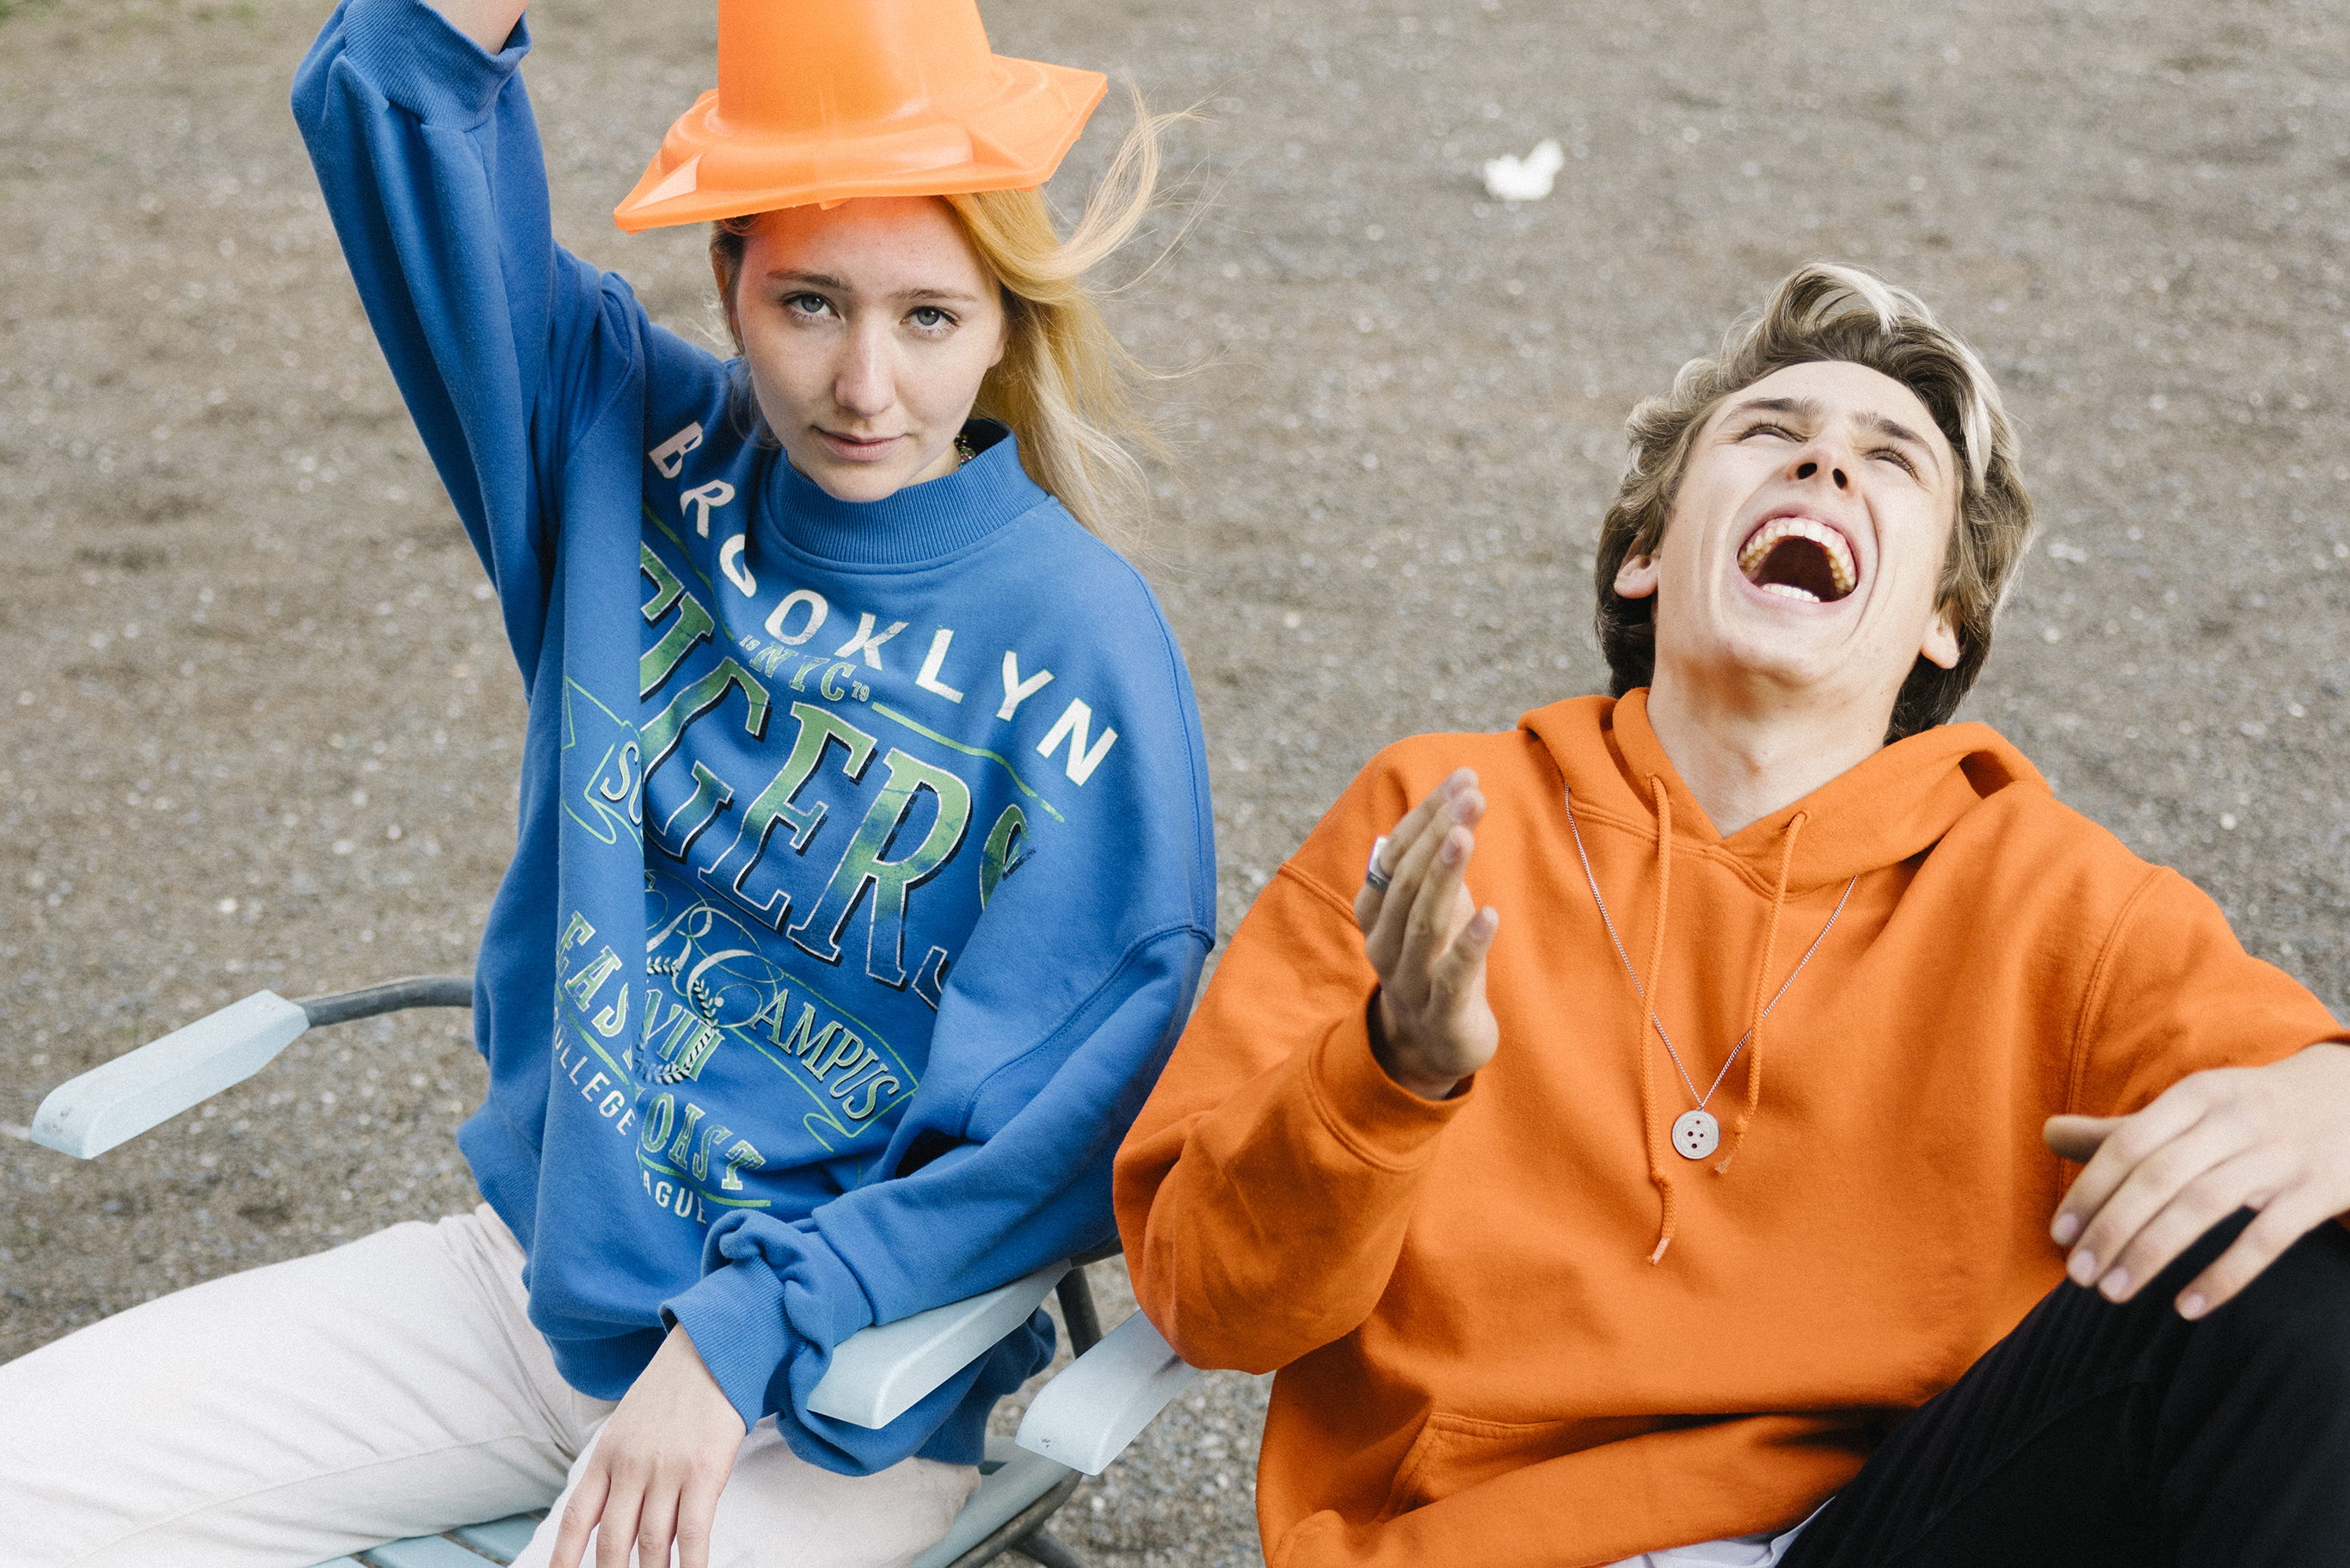 Ein Jugendlicher lacht hysterisch und blickt dabei zum Himmel, während eine Jugendliche in die Kamera blickt und dabei einen Verkehrsleitkegel als Hut trägt.